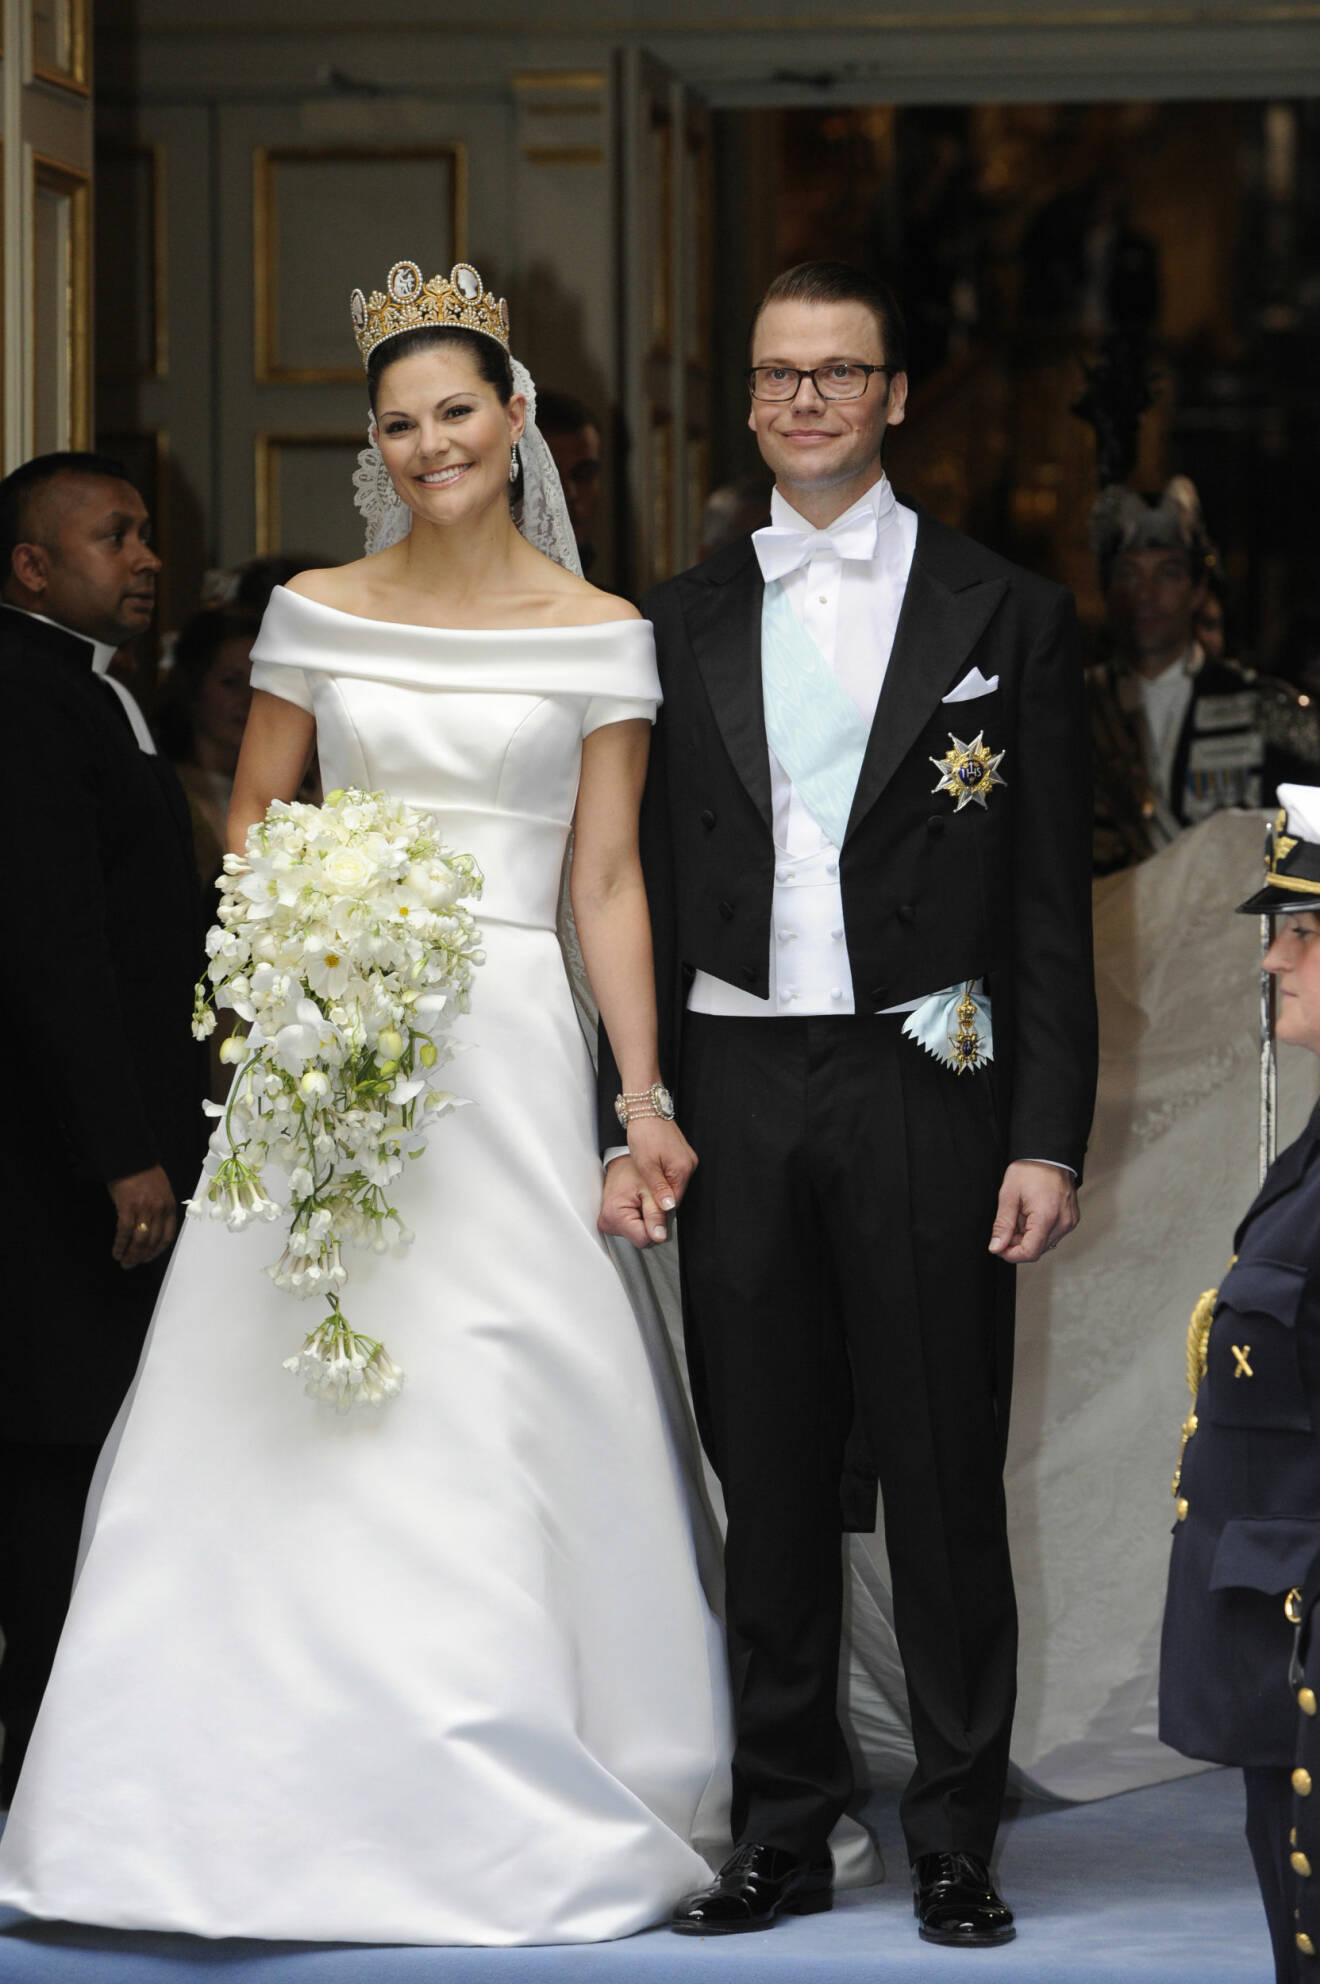 Victoria och Daniel precis efter vigselcermonin. Victoria har en krona, sin vita, minimalistiska bröllopsklänning med båtringning, en blombukett med vita blommor. Daniel har frack.